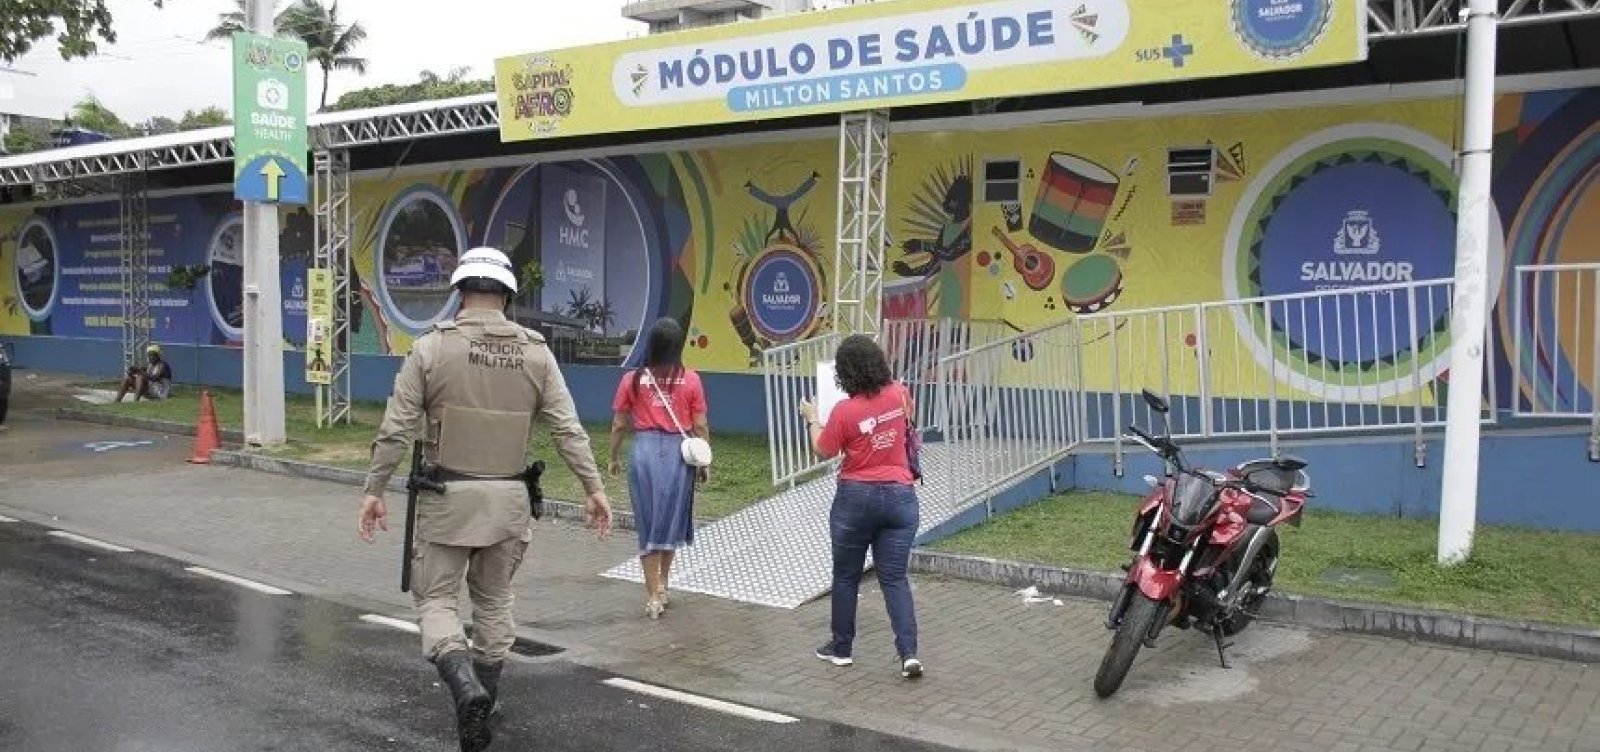 MP solicita que trios deixem de estacionar em módulo de saúde na Avenida Milton Santos